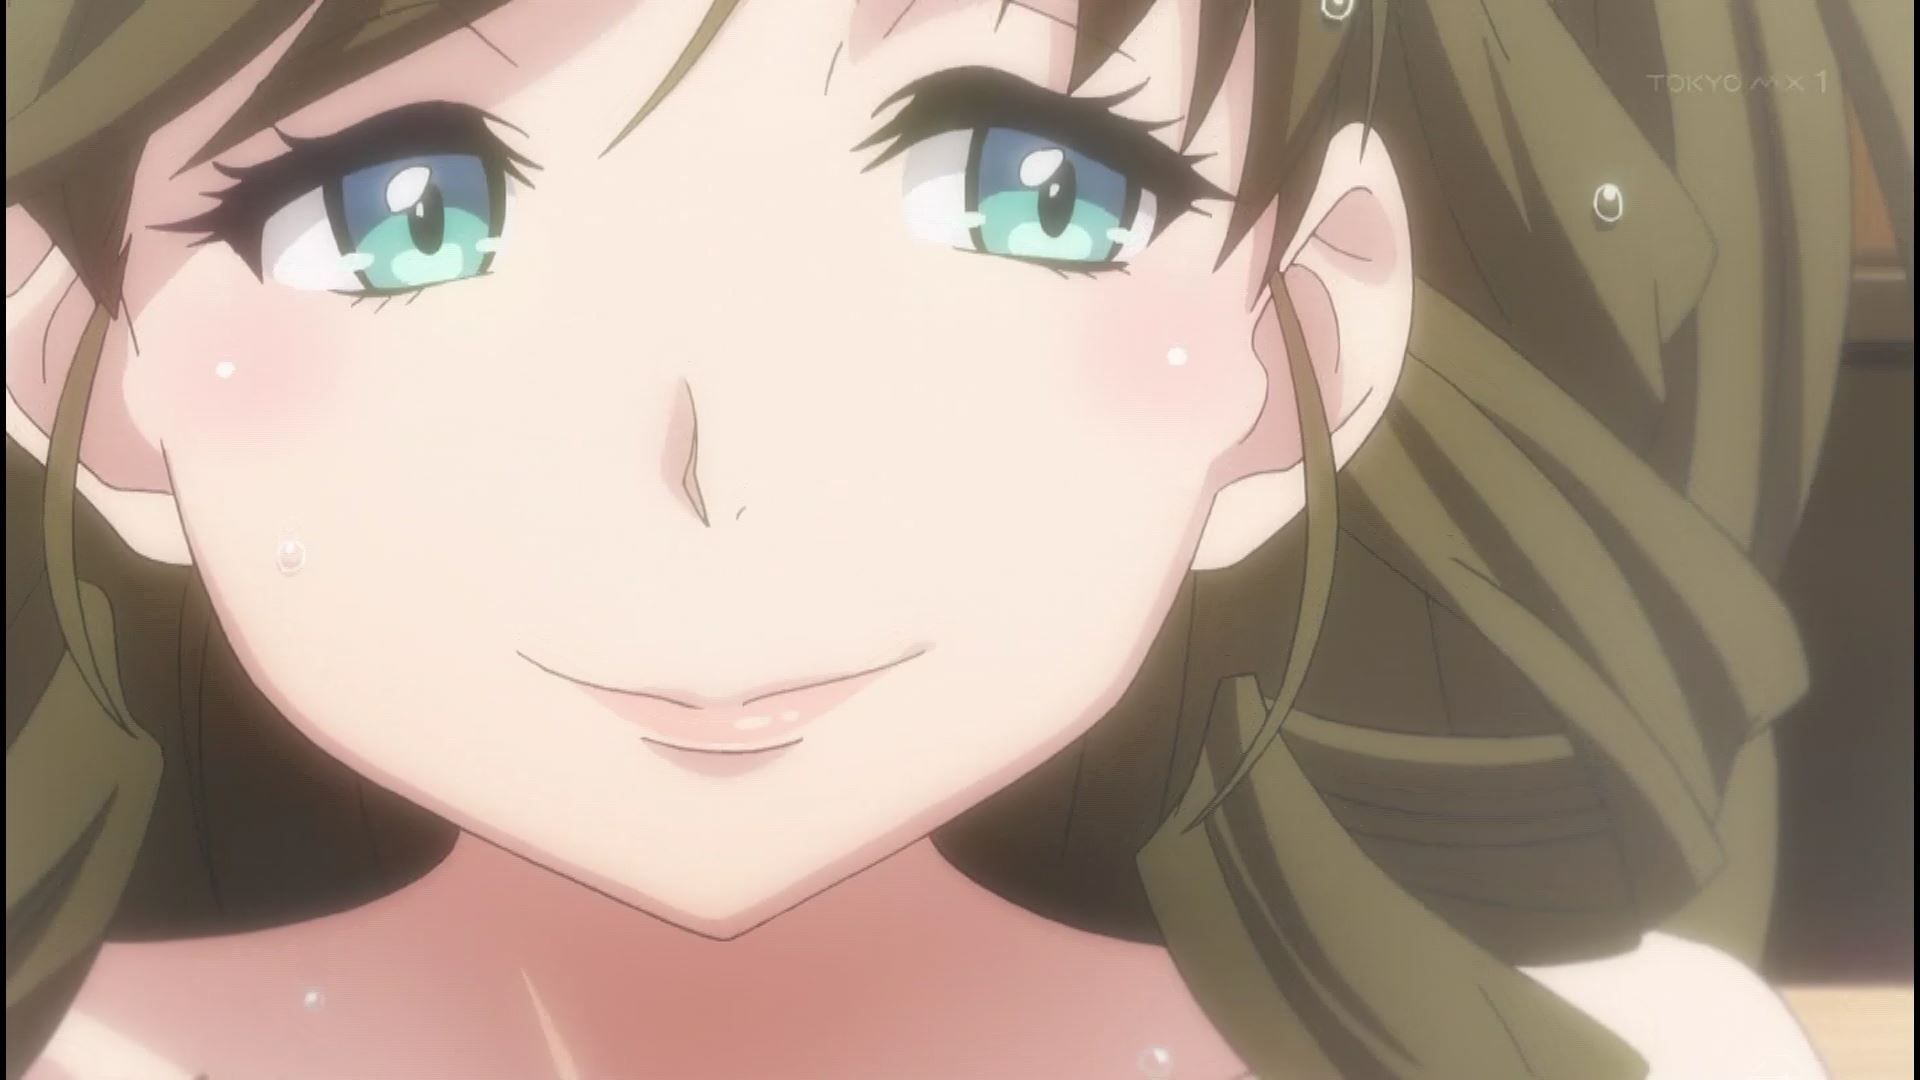 Anime [Kandagawa JETGIRLS] 8 episodes of girls erotic round-view bath bathing scene! 11